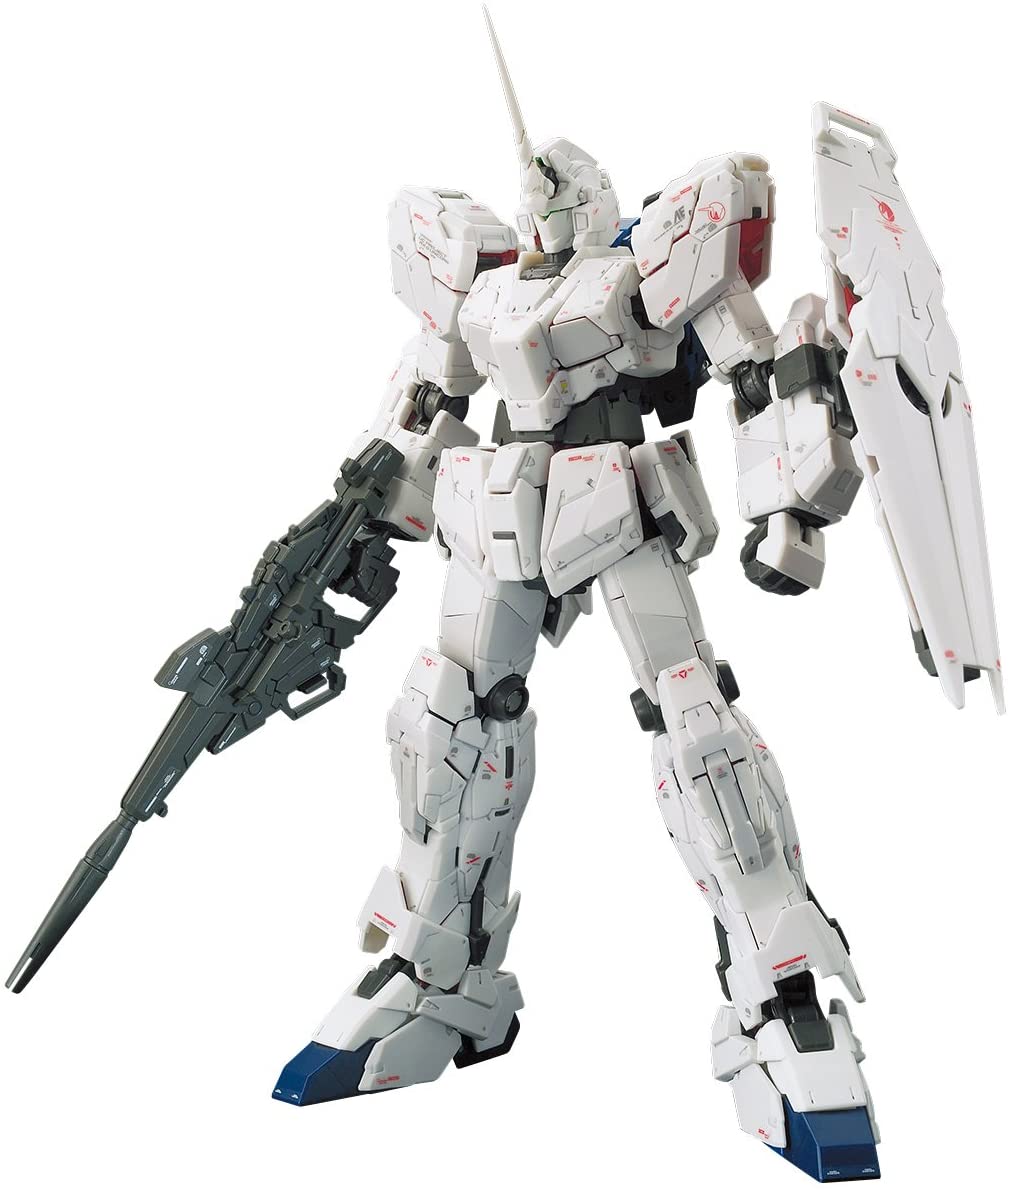 RG Mobile Suit Gundam UC Full Armor Unicorn Gundam 1/144 Scale